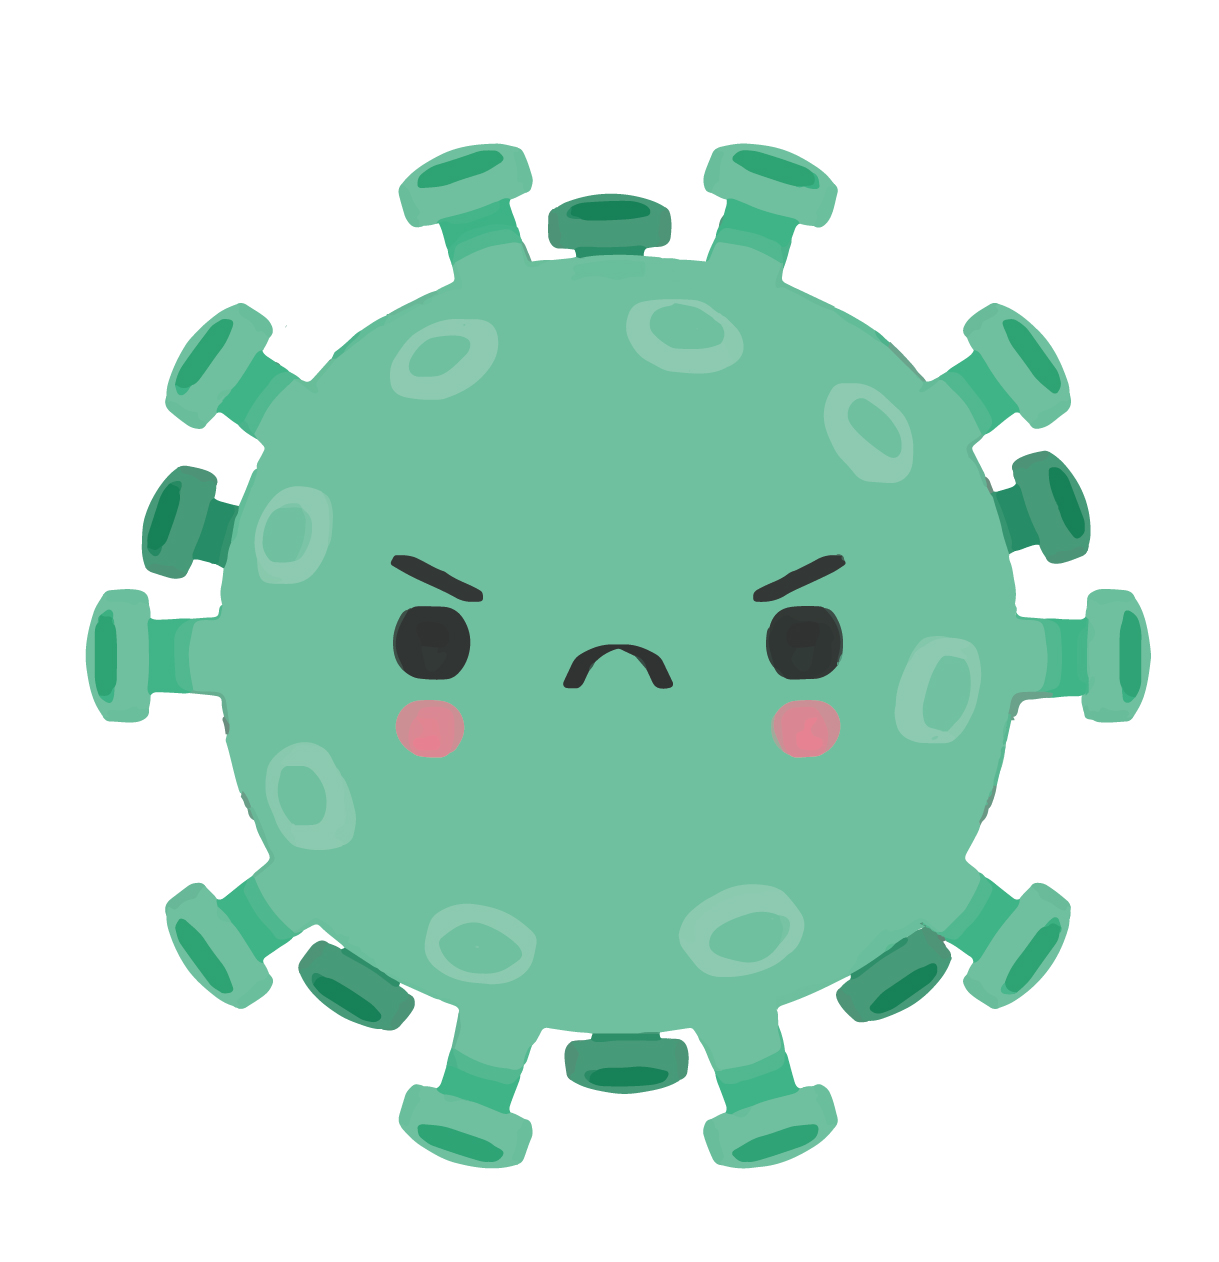 Gravura de uma bactéria na cor verde